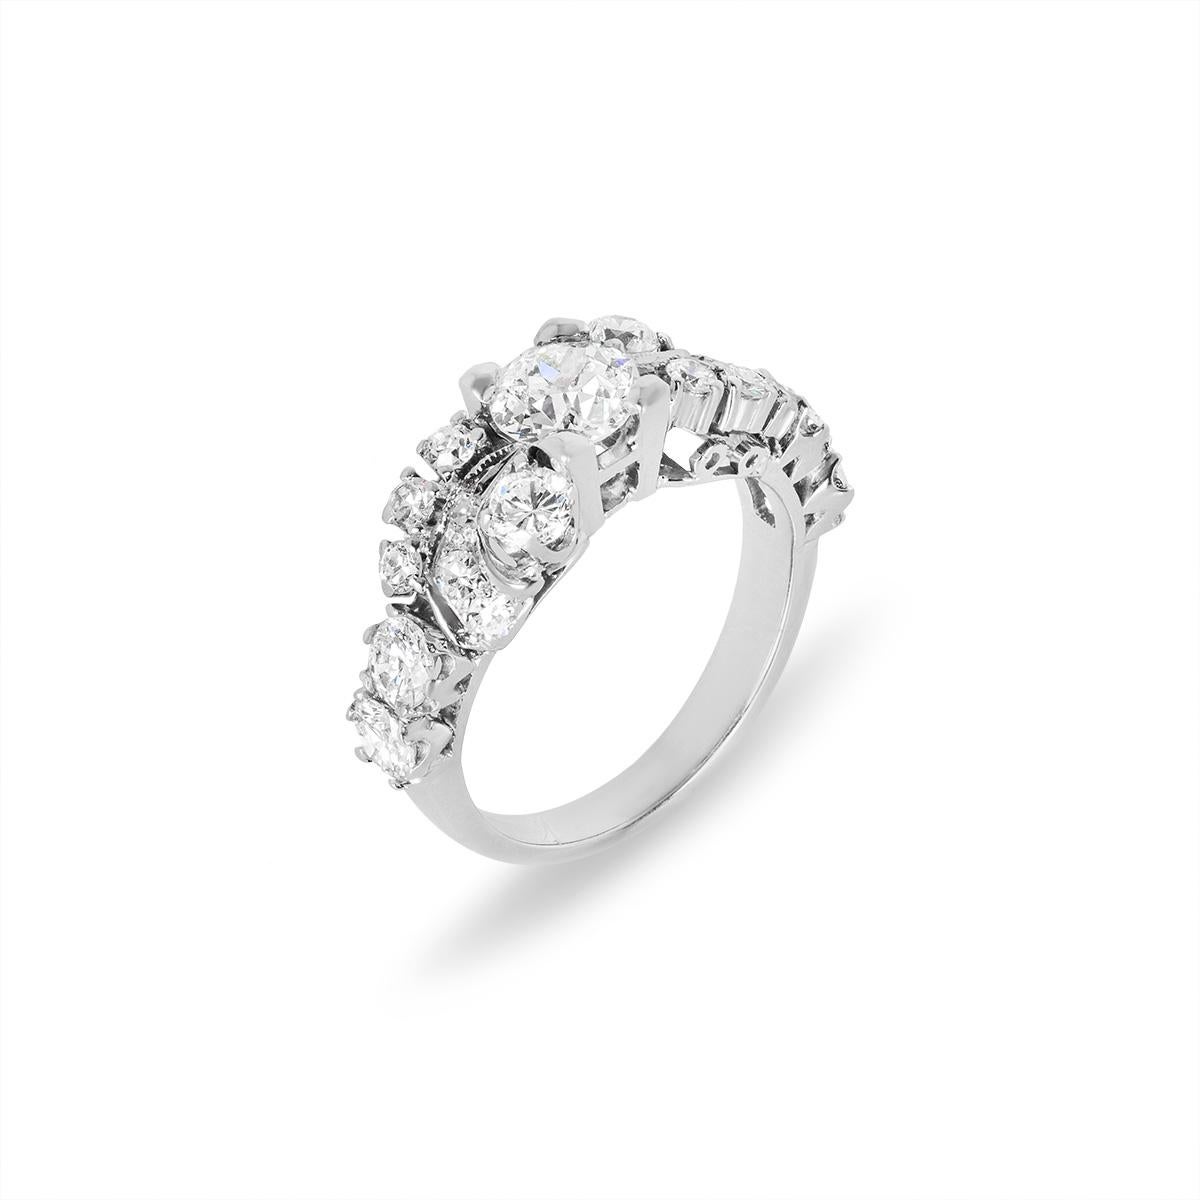 Ein einzigartiger diamantener Verlobungsring aus 14 Karat Weißgold. Der Ring ist in der Mitte mit einem Diamanten im alten europäischen Schliff mit einem Gewicht von ca. 0,86ct, Farbe H und Reinheit VS besetzt. Ergänzt wird der zentrale Diamant